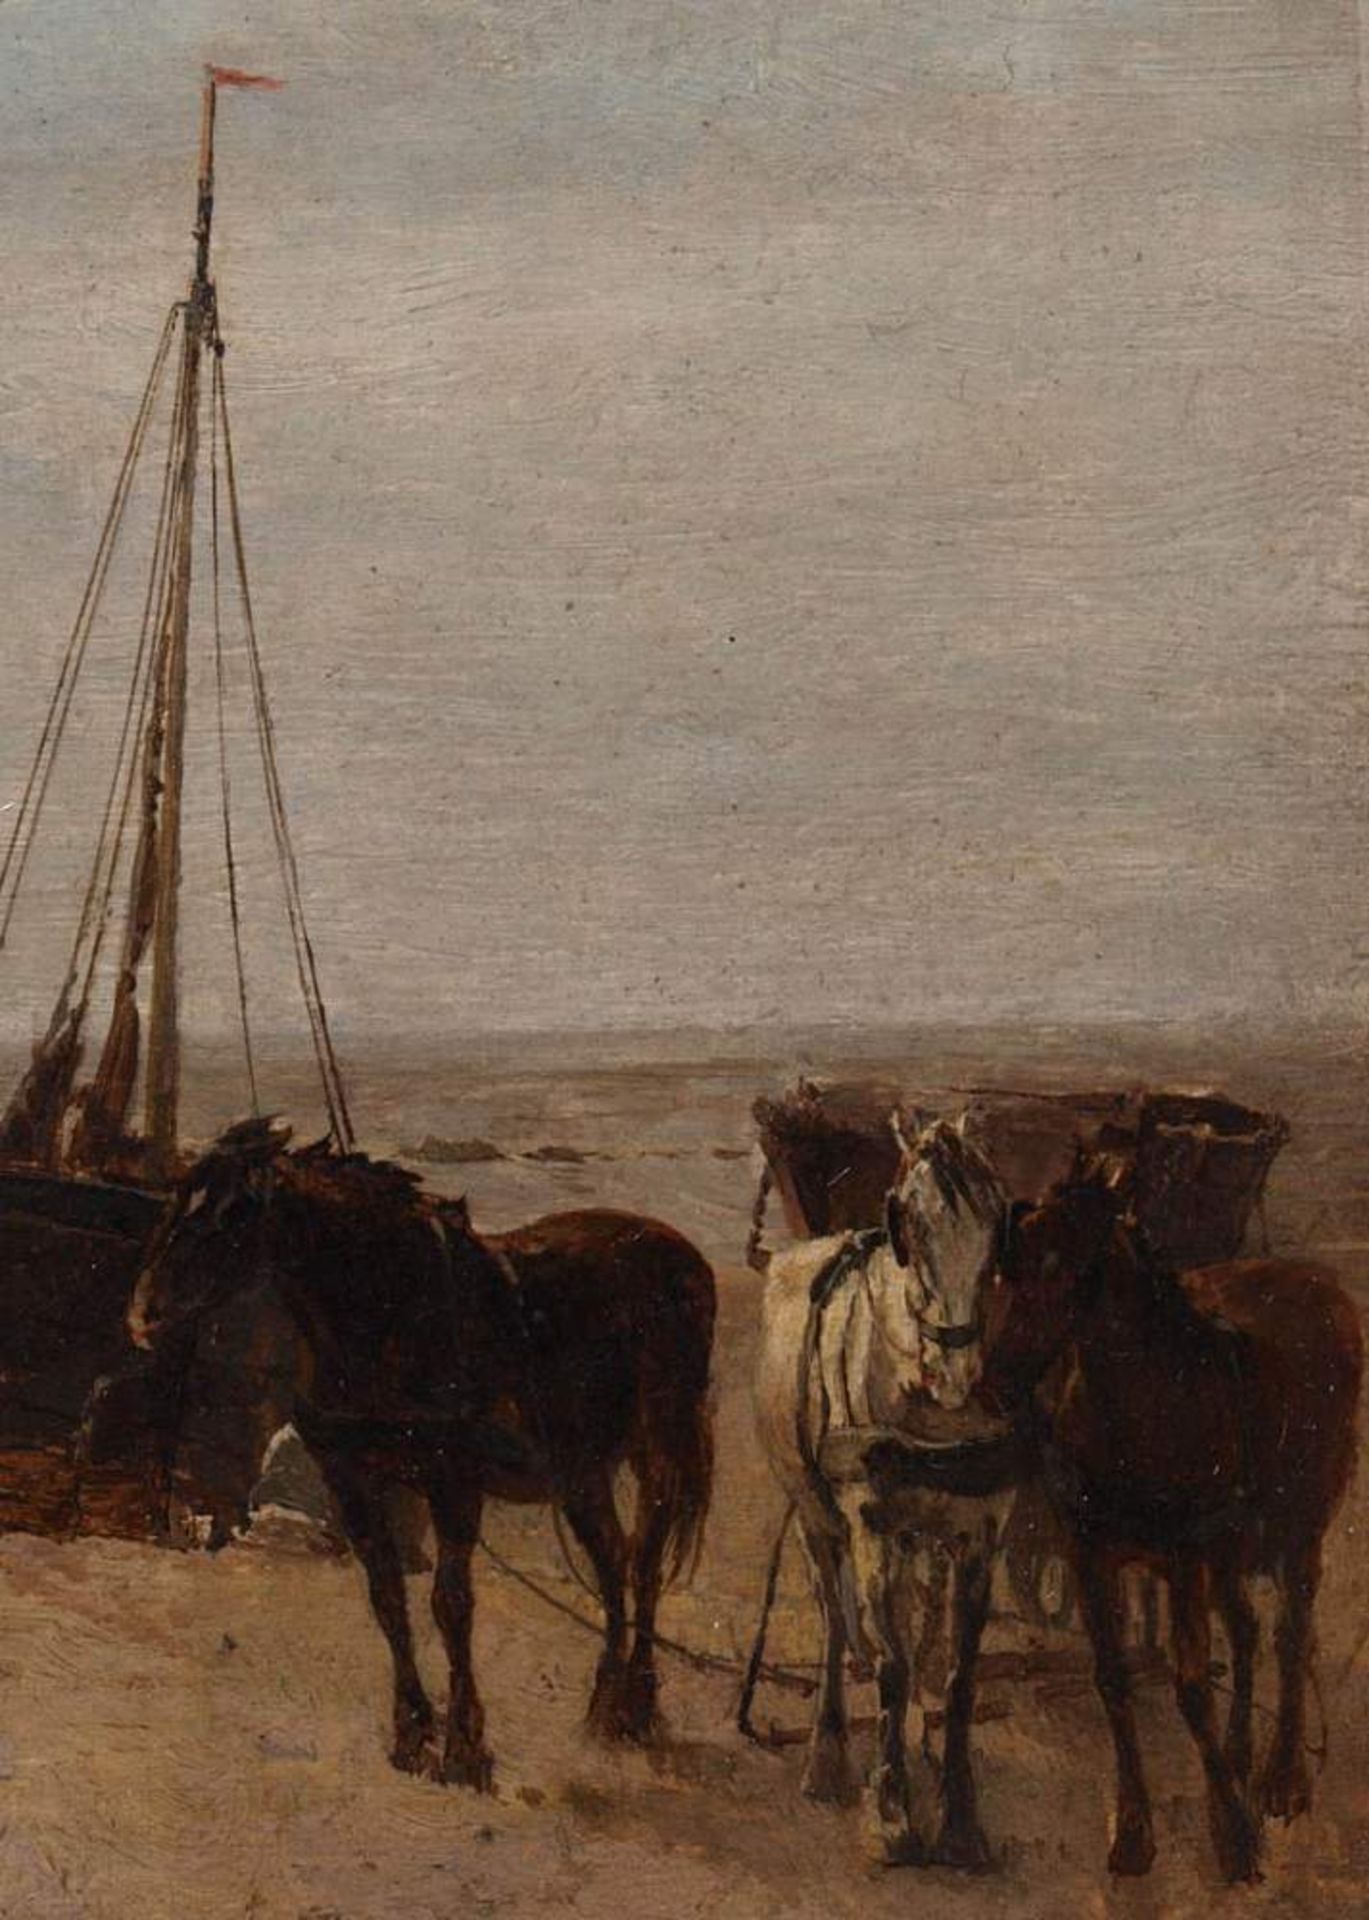 von Bochmann, Gregor, 1850 - 1930Strandszene mit Boot und Pferdegespann, daneben reiche - Bild 5 aus 11